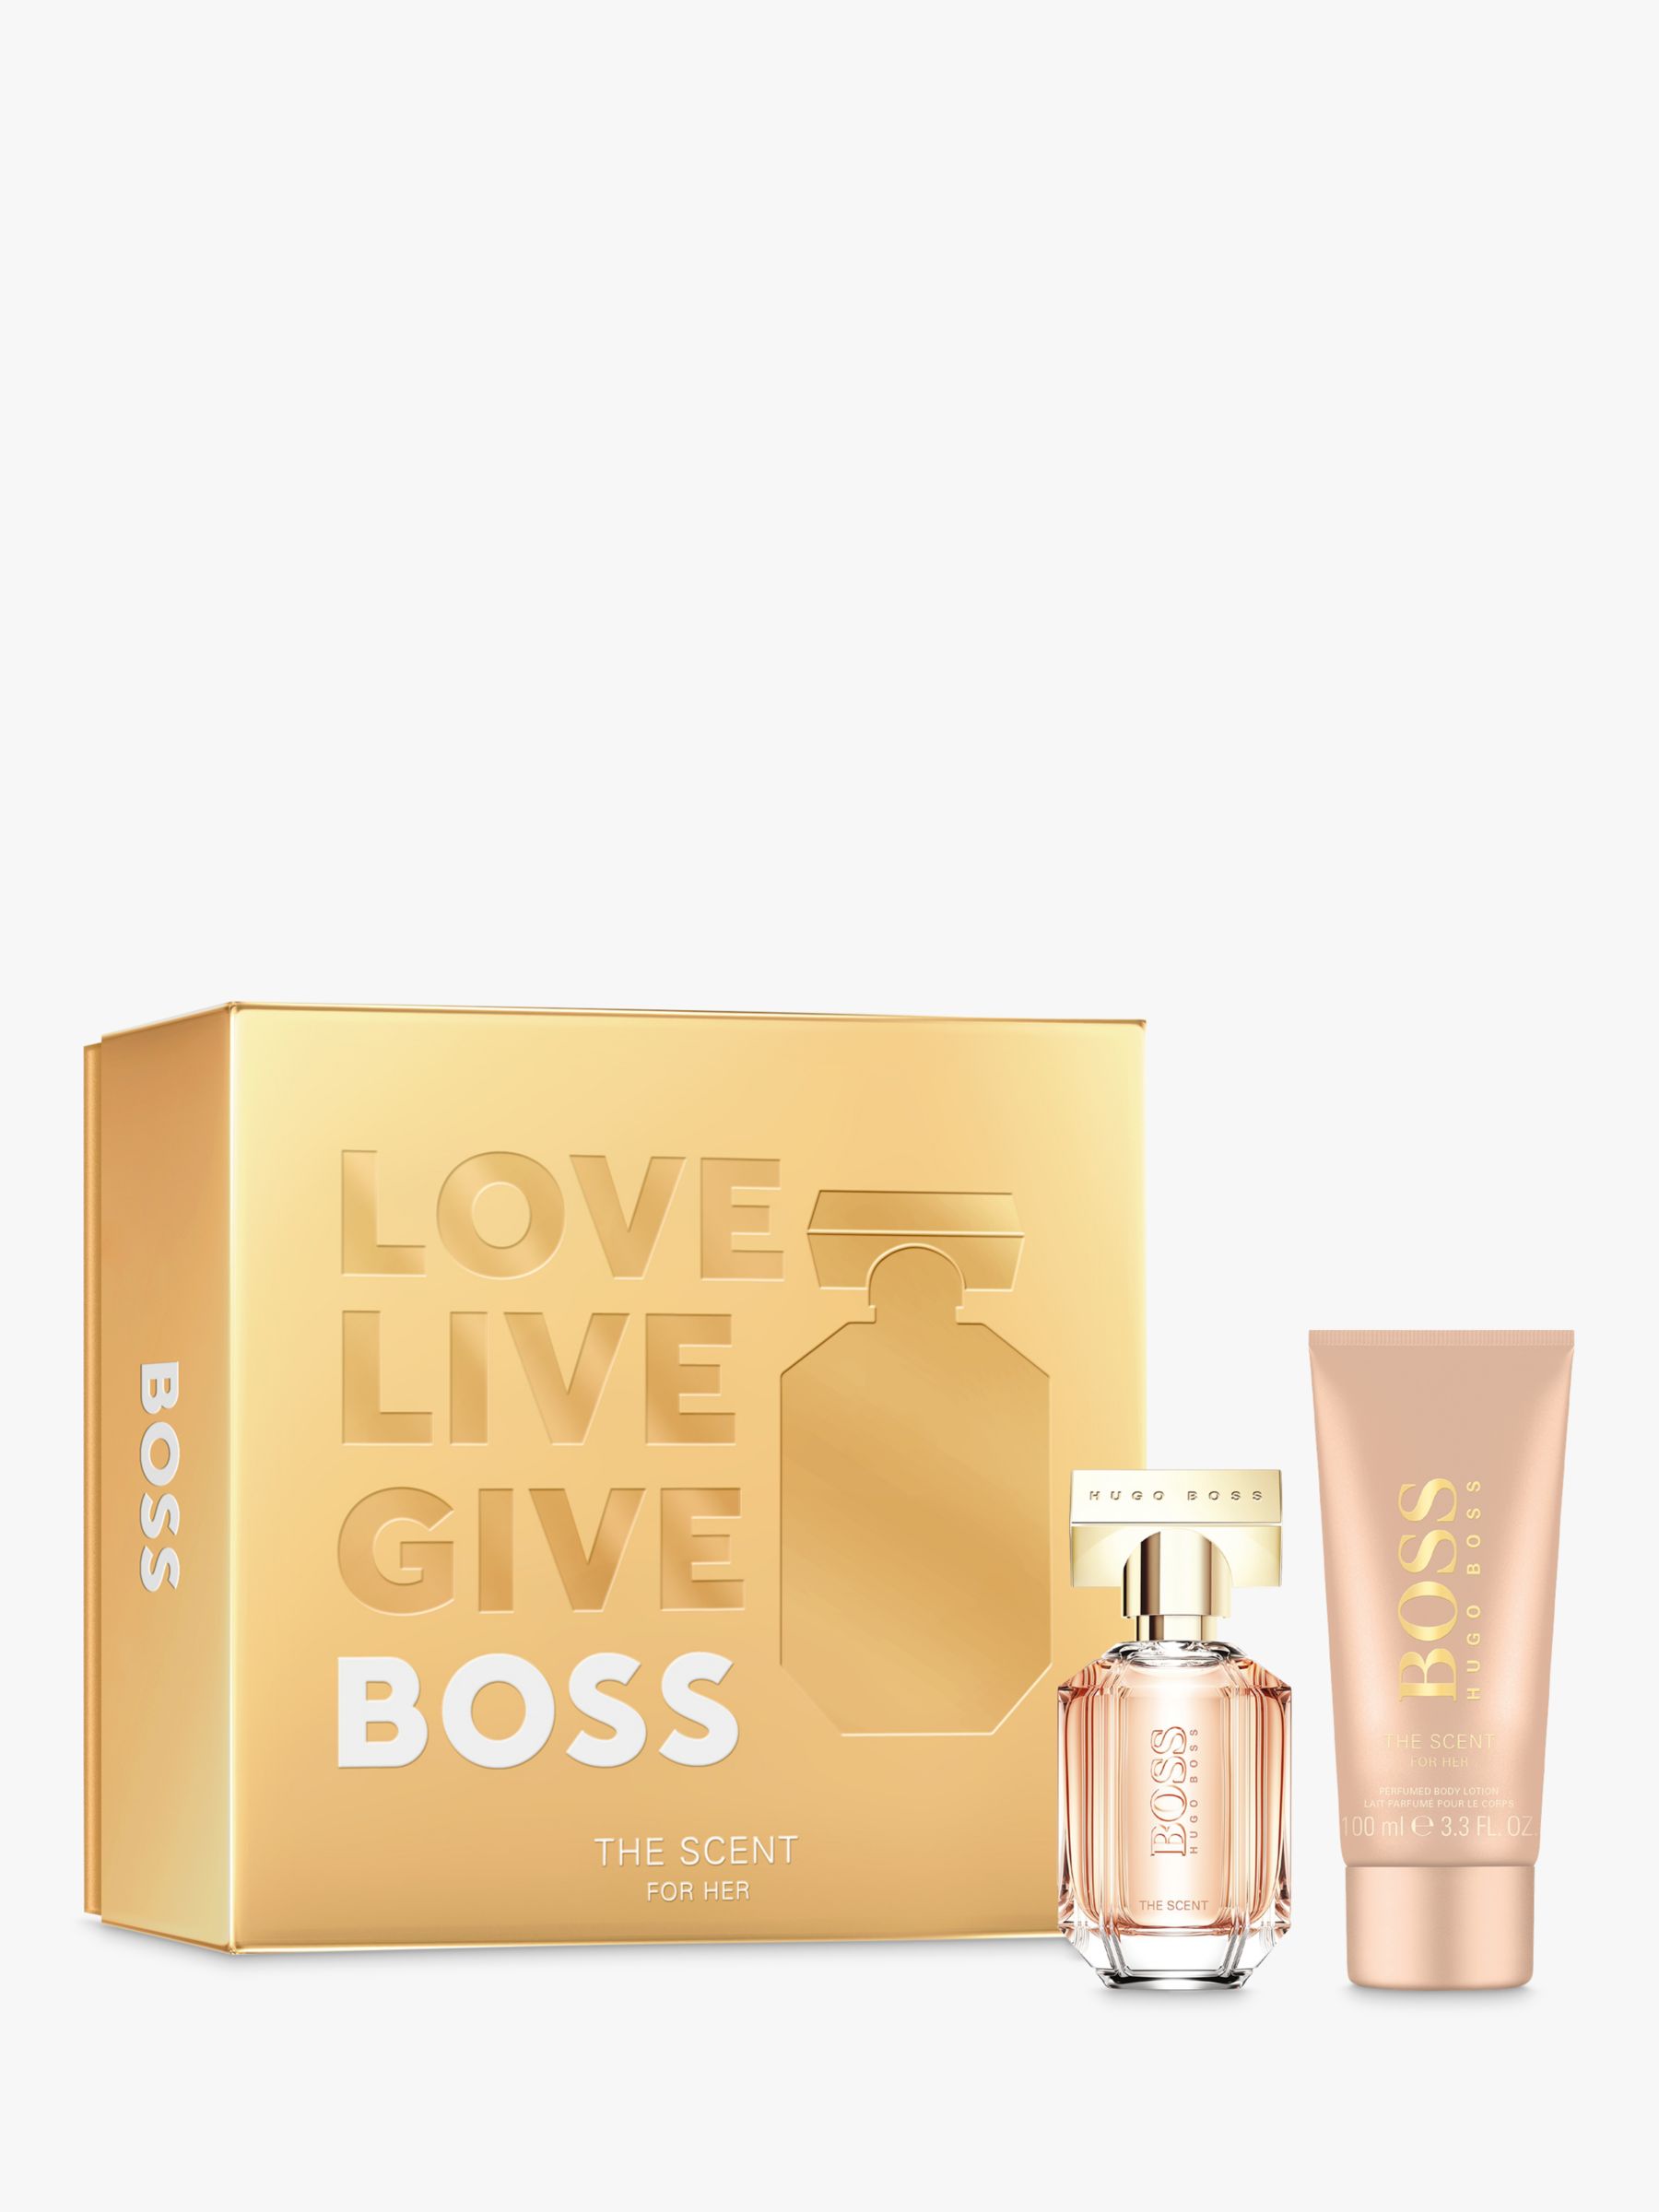 Regeren Somber terras HUGO BOSS BOSS The Scent For Her Eau de Parfum, 50ml Fragrance Gift Set